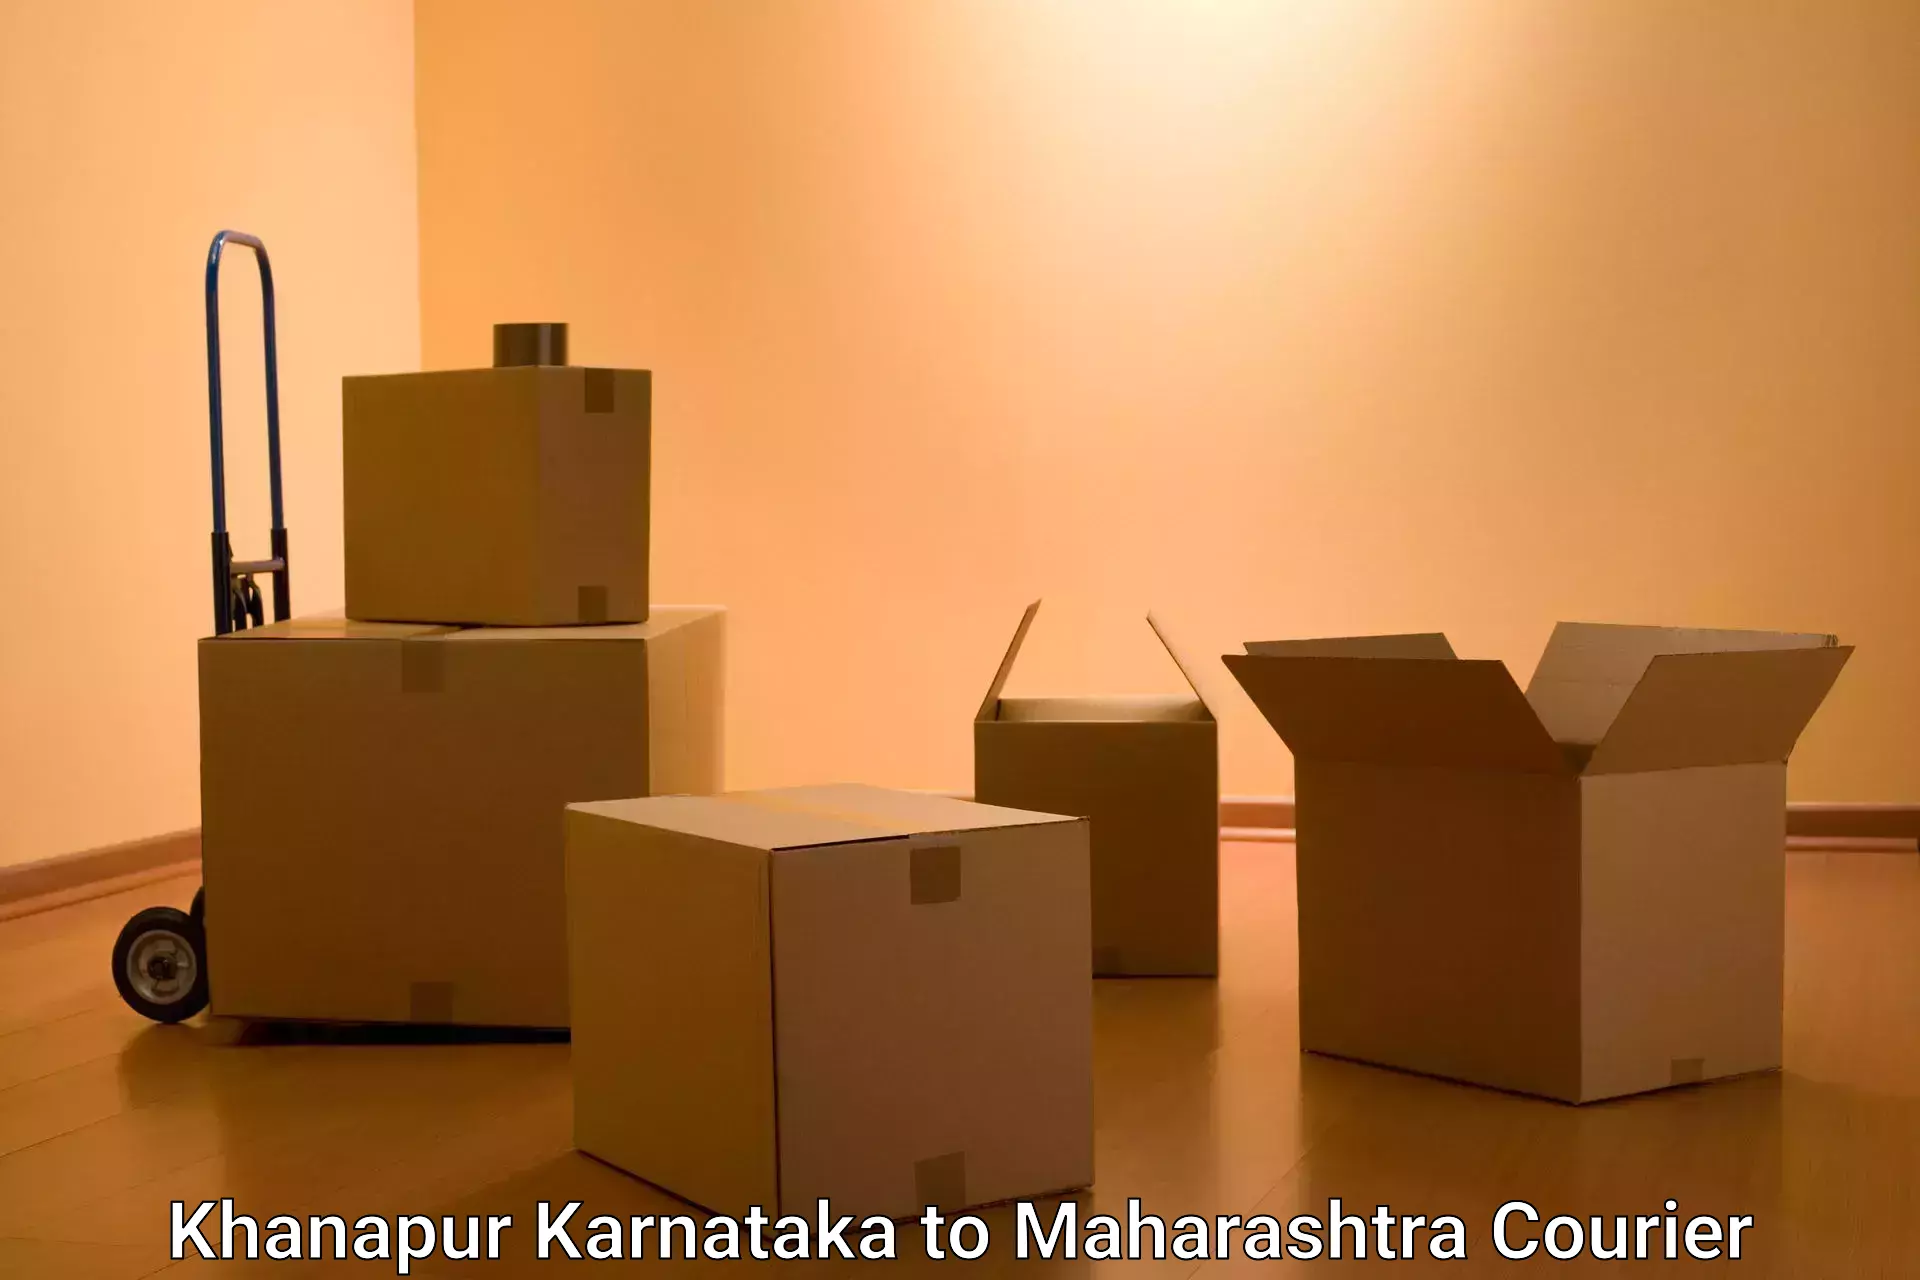 Package delivery network Khanapur Karnataka to Atpadi